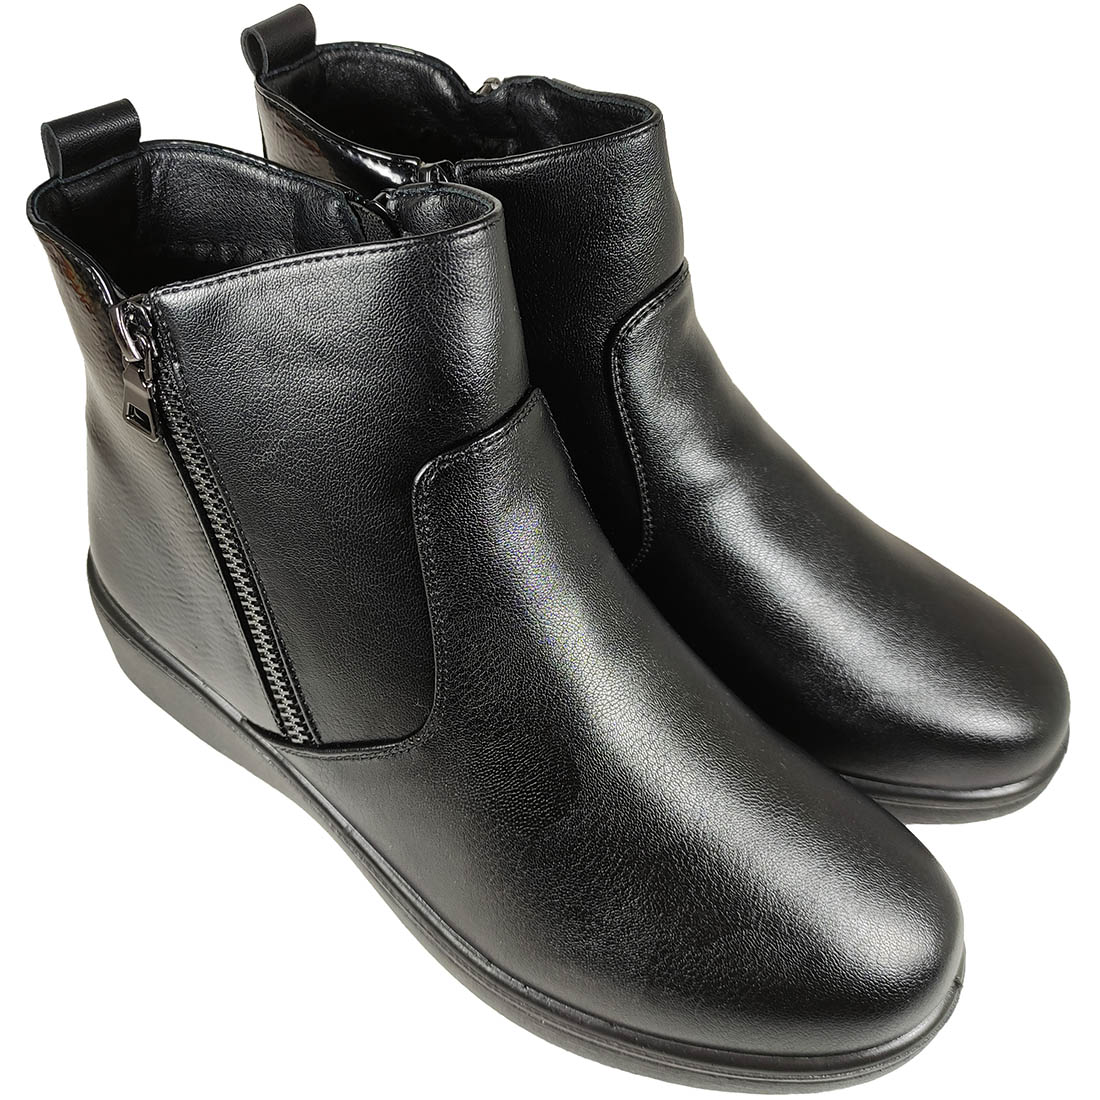 Womens Boots Mira & Max 5350 Black